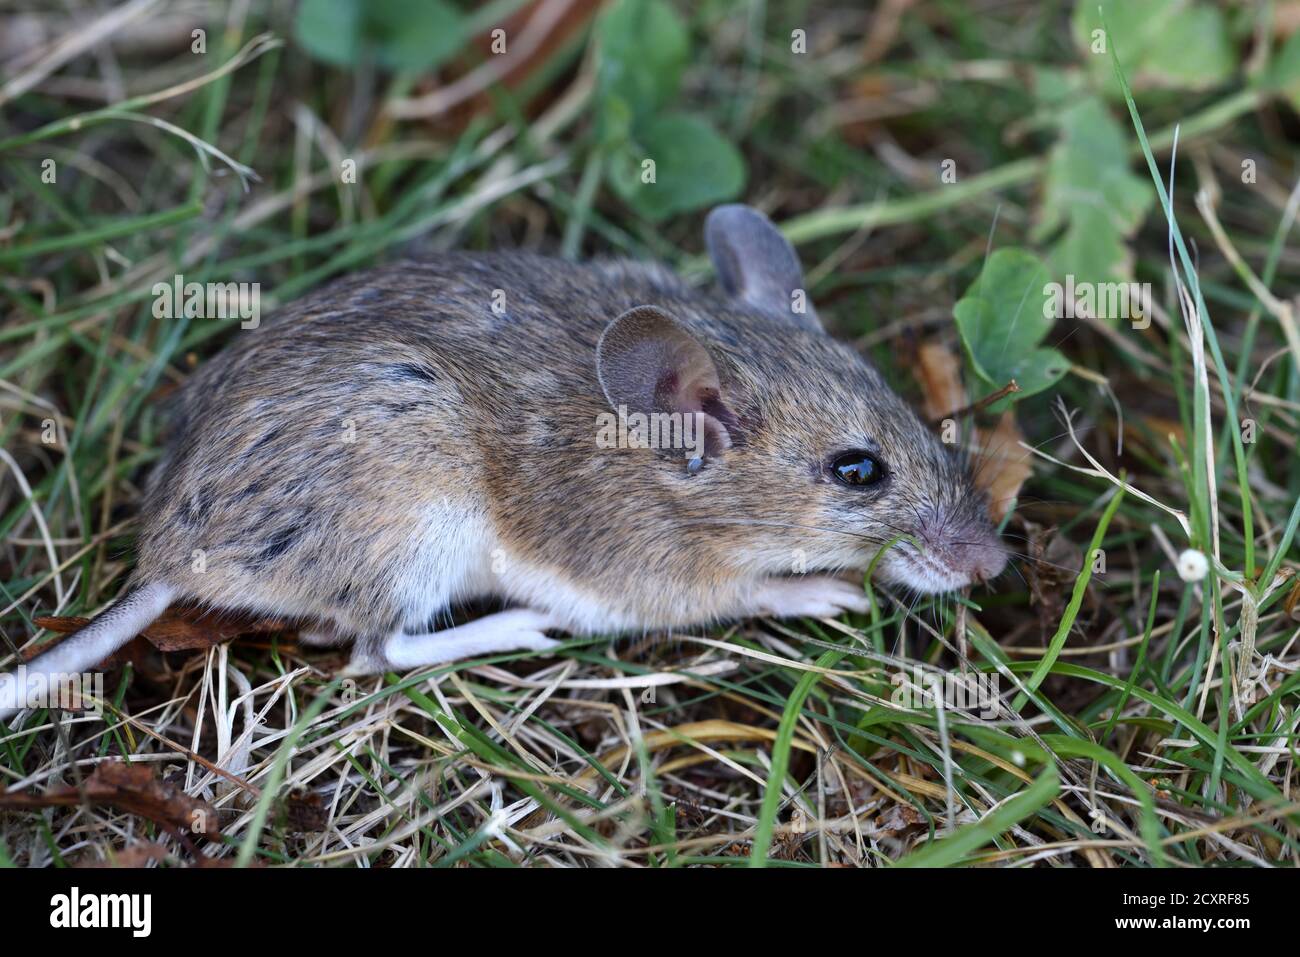 Ratón de madera, Apodemus sylvaticus, también conocido como ratón de campo de cola larga, ratón de campo común o ratón de madera europeo Foto de stock